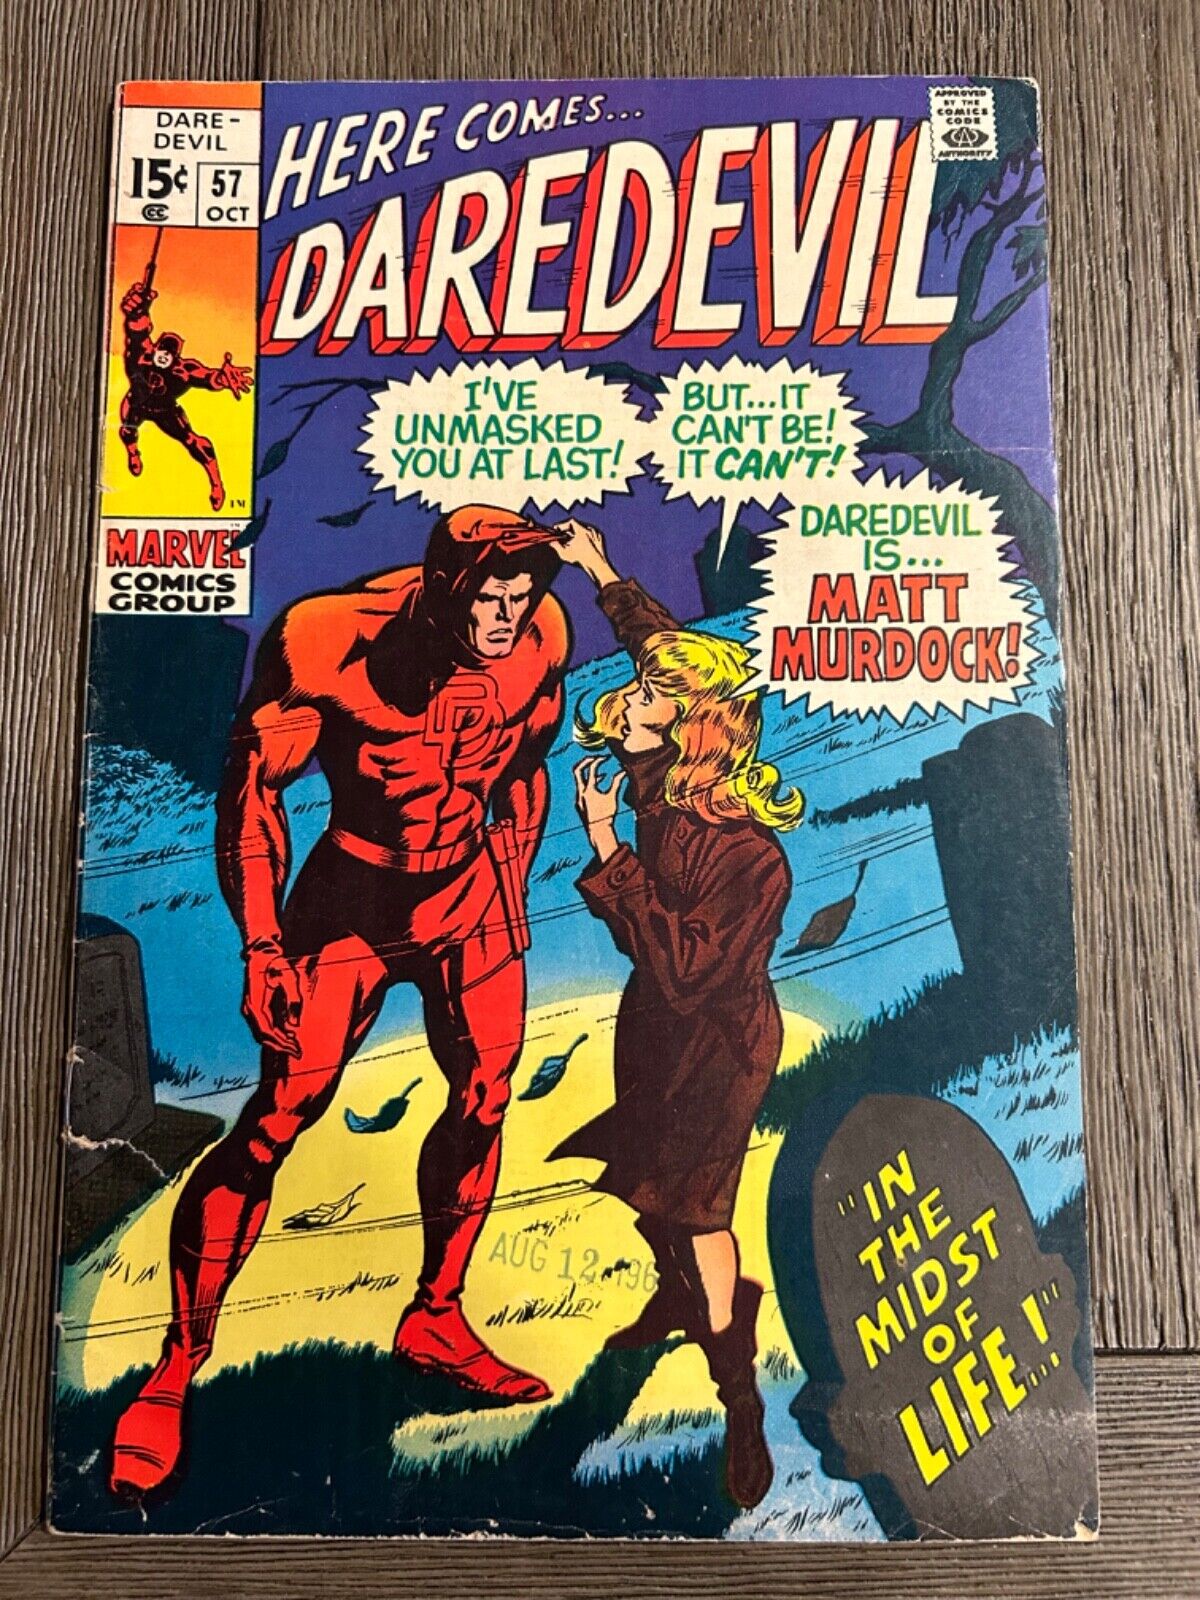 Daredevil #57 1969 Daredevil is... MATT MURDOCK